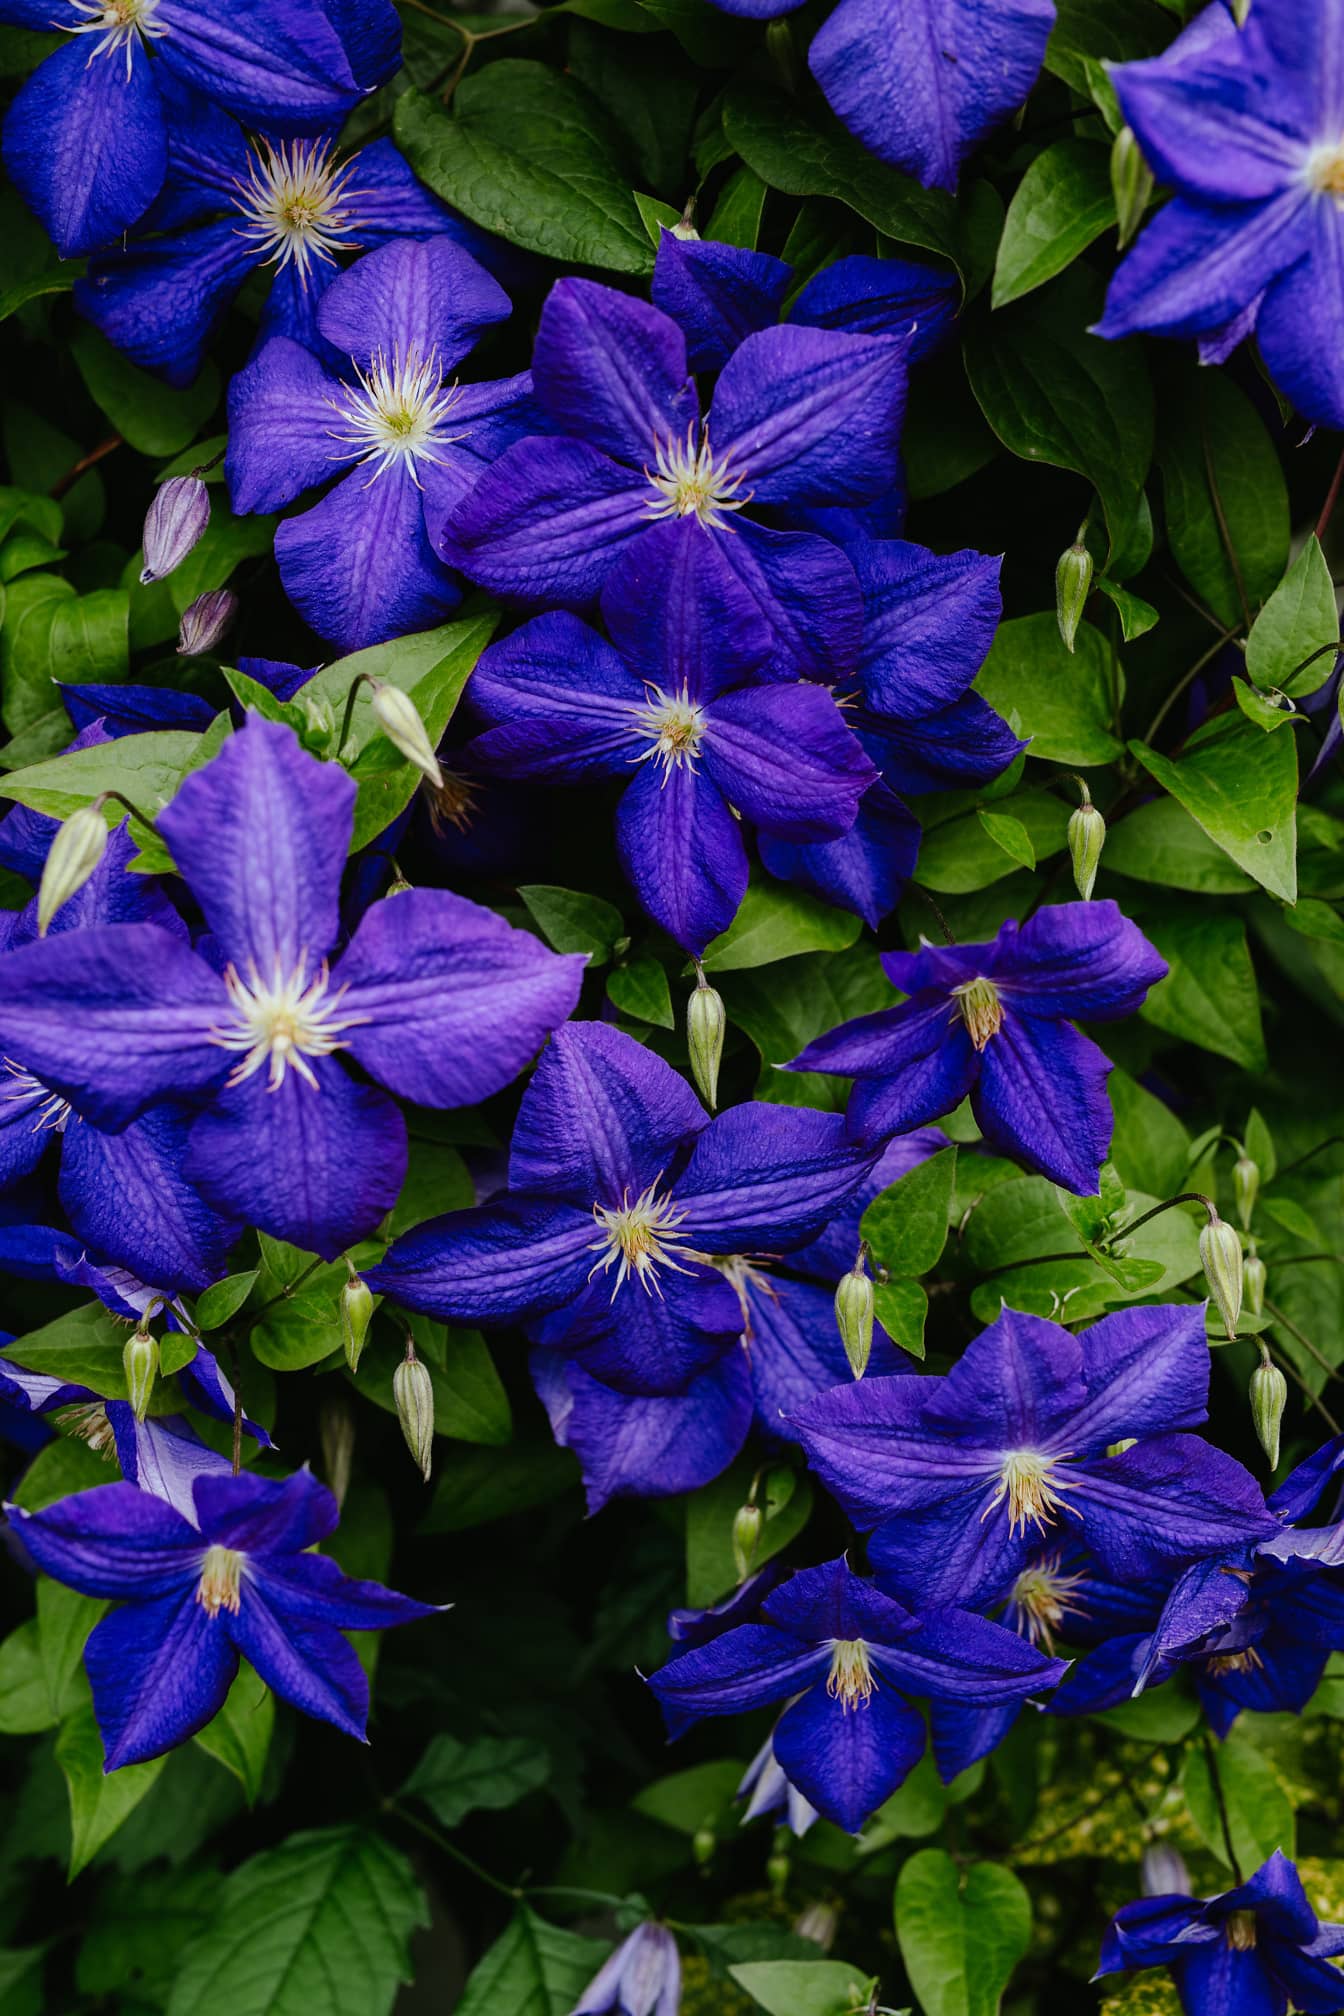 Vierge asiatique (Clematis florida) fleurs violacées bleu foncé en gros plan